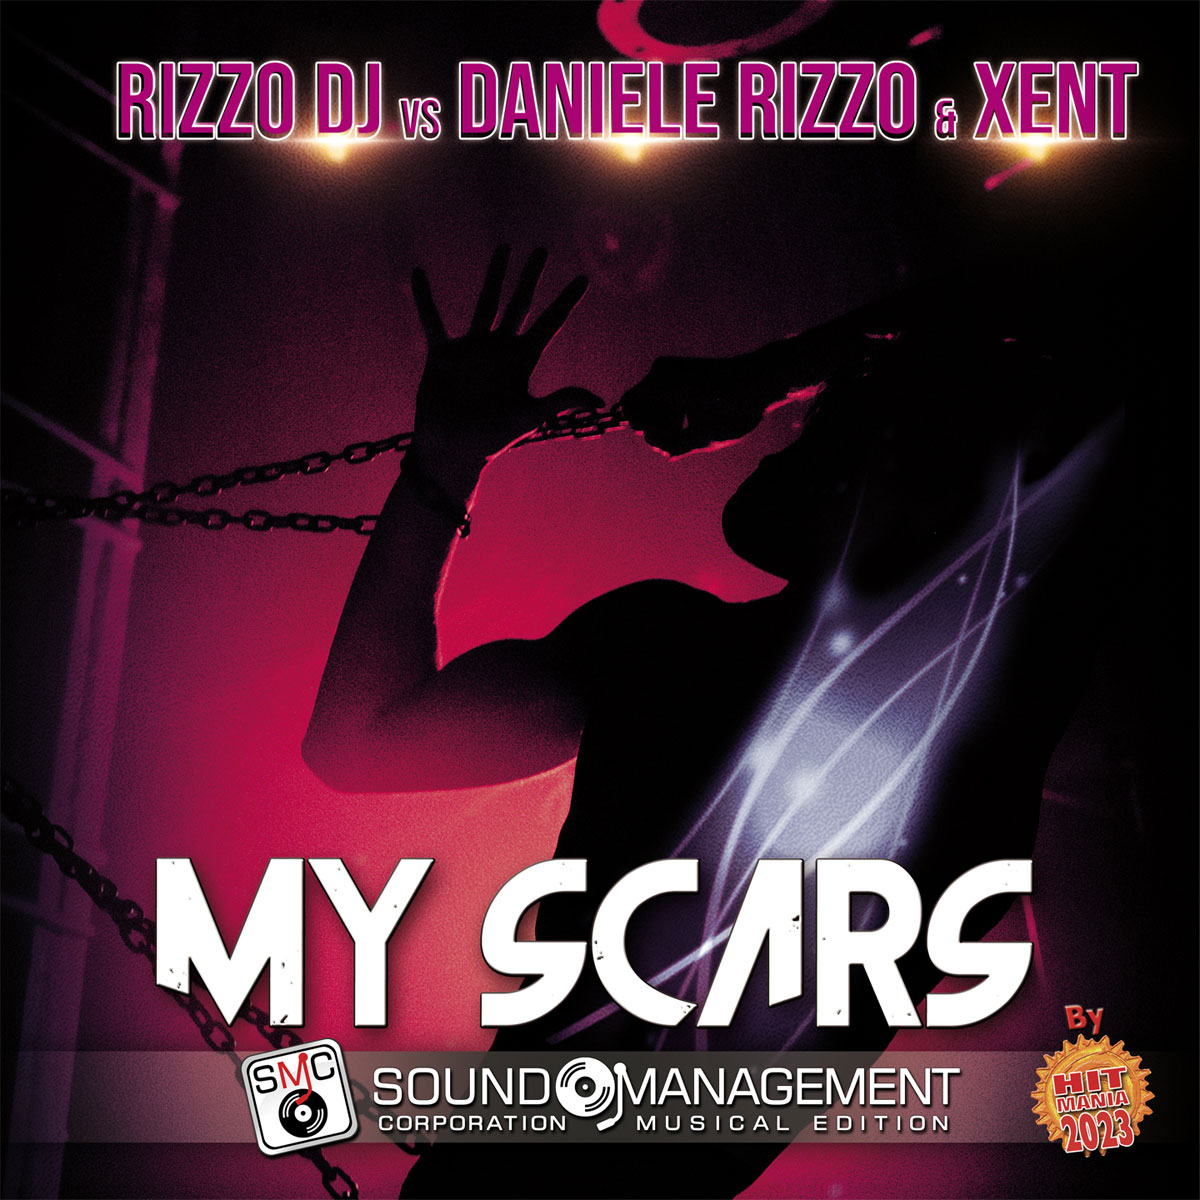 RIZZO DJ vs DANIELE RIZZO & XENT – VENERDÌ 2 DICEMBRE ESCE IN RADIO E IN DIGITALE “MY SCARS” IL NUOVO SINGOLO